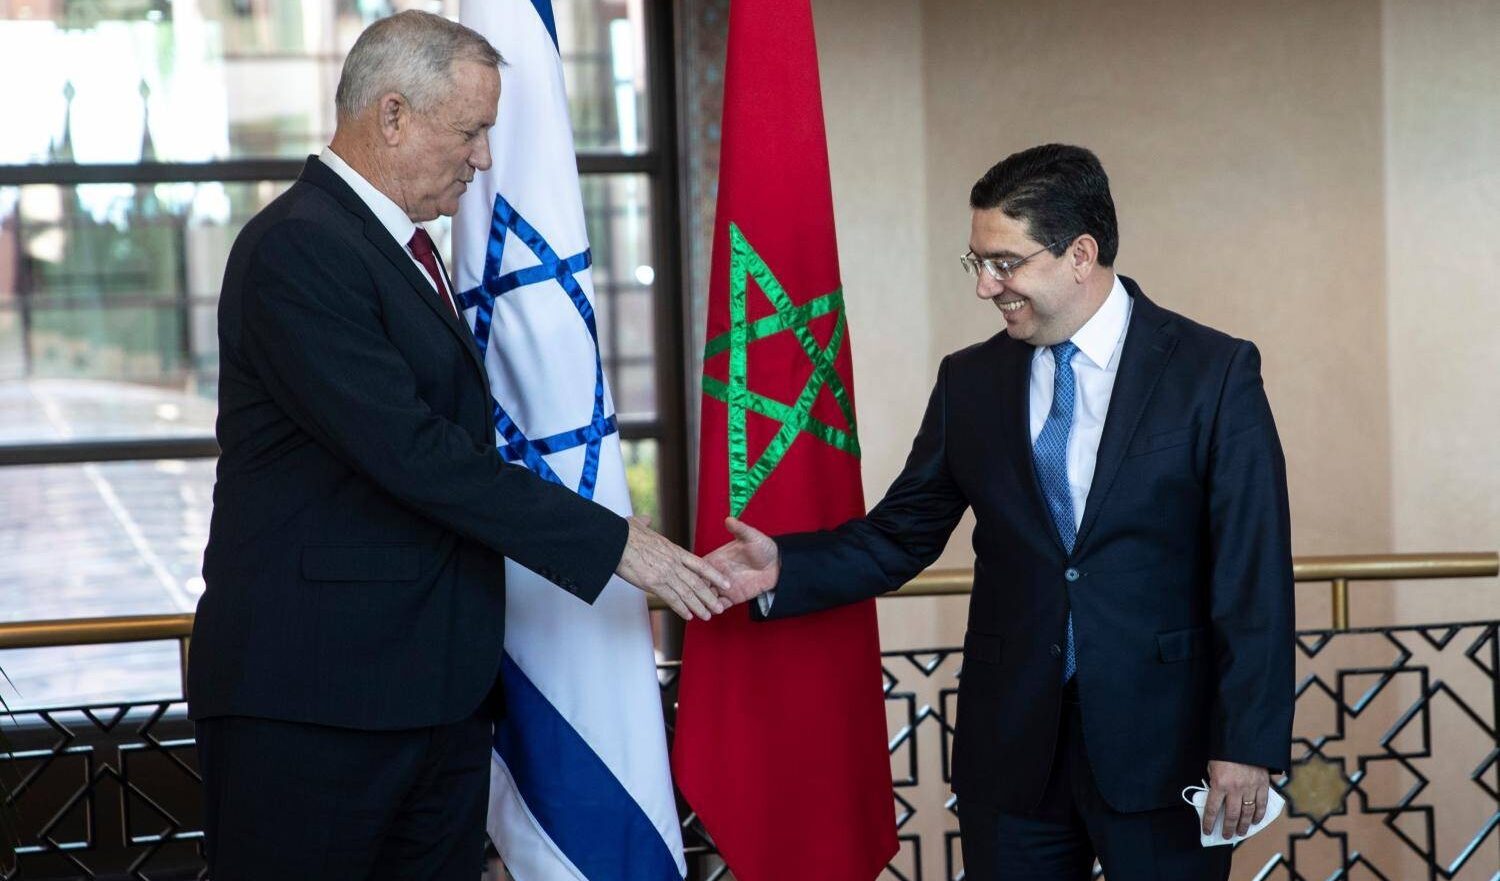 Guerra di Gaza: brusco arresto dei rapporti tra Marocco e Israele